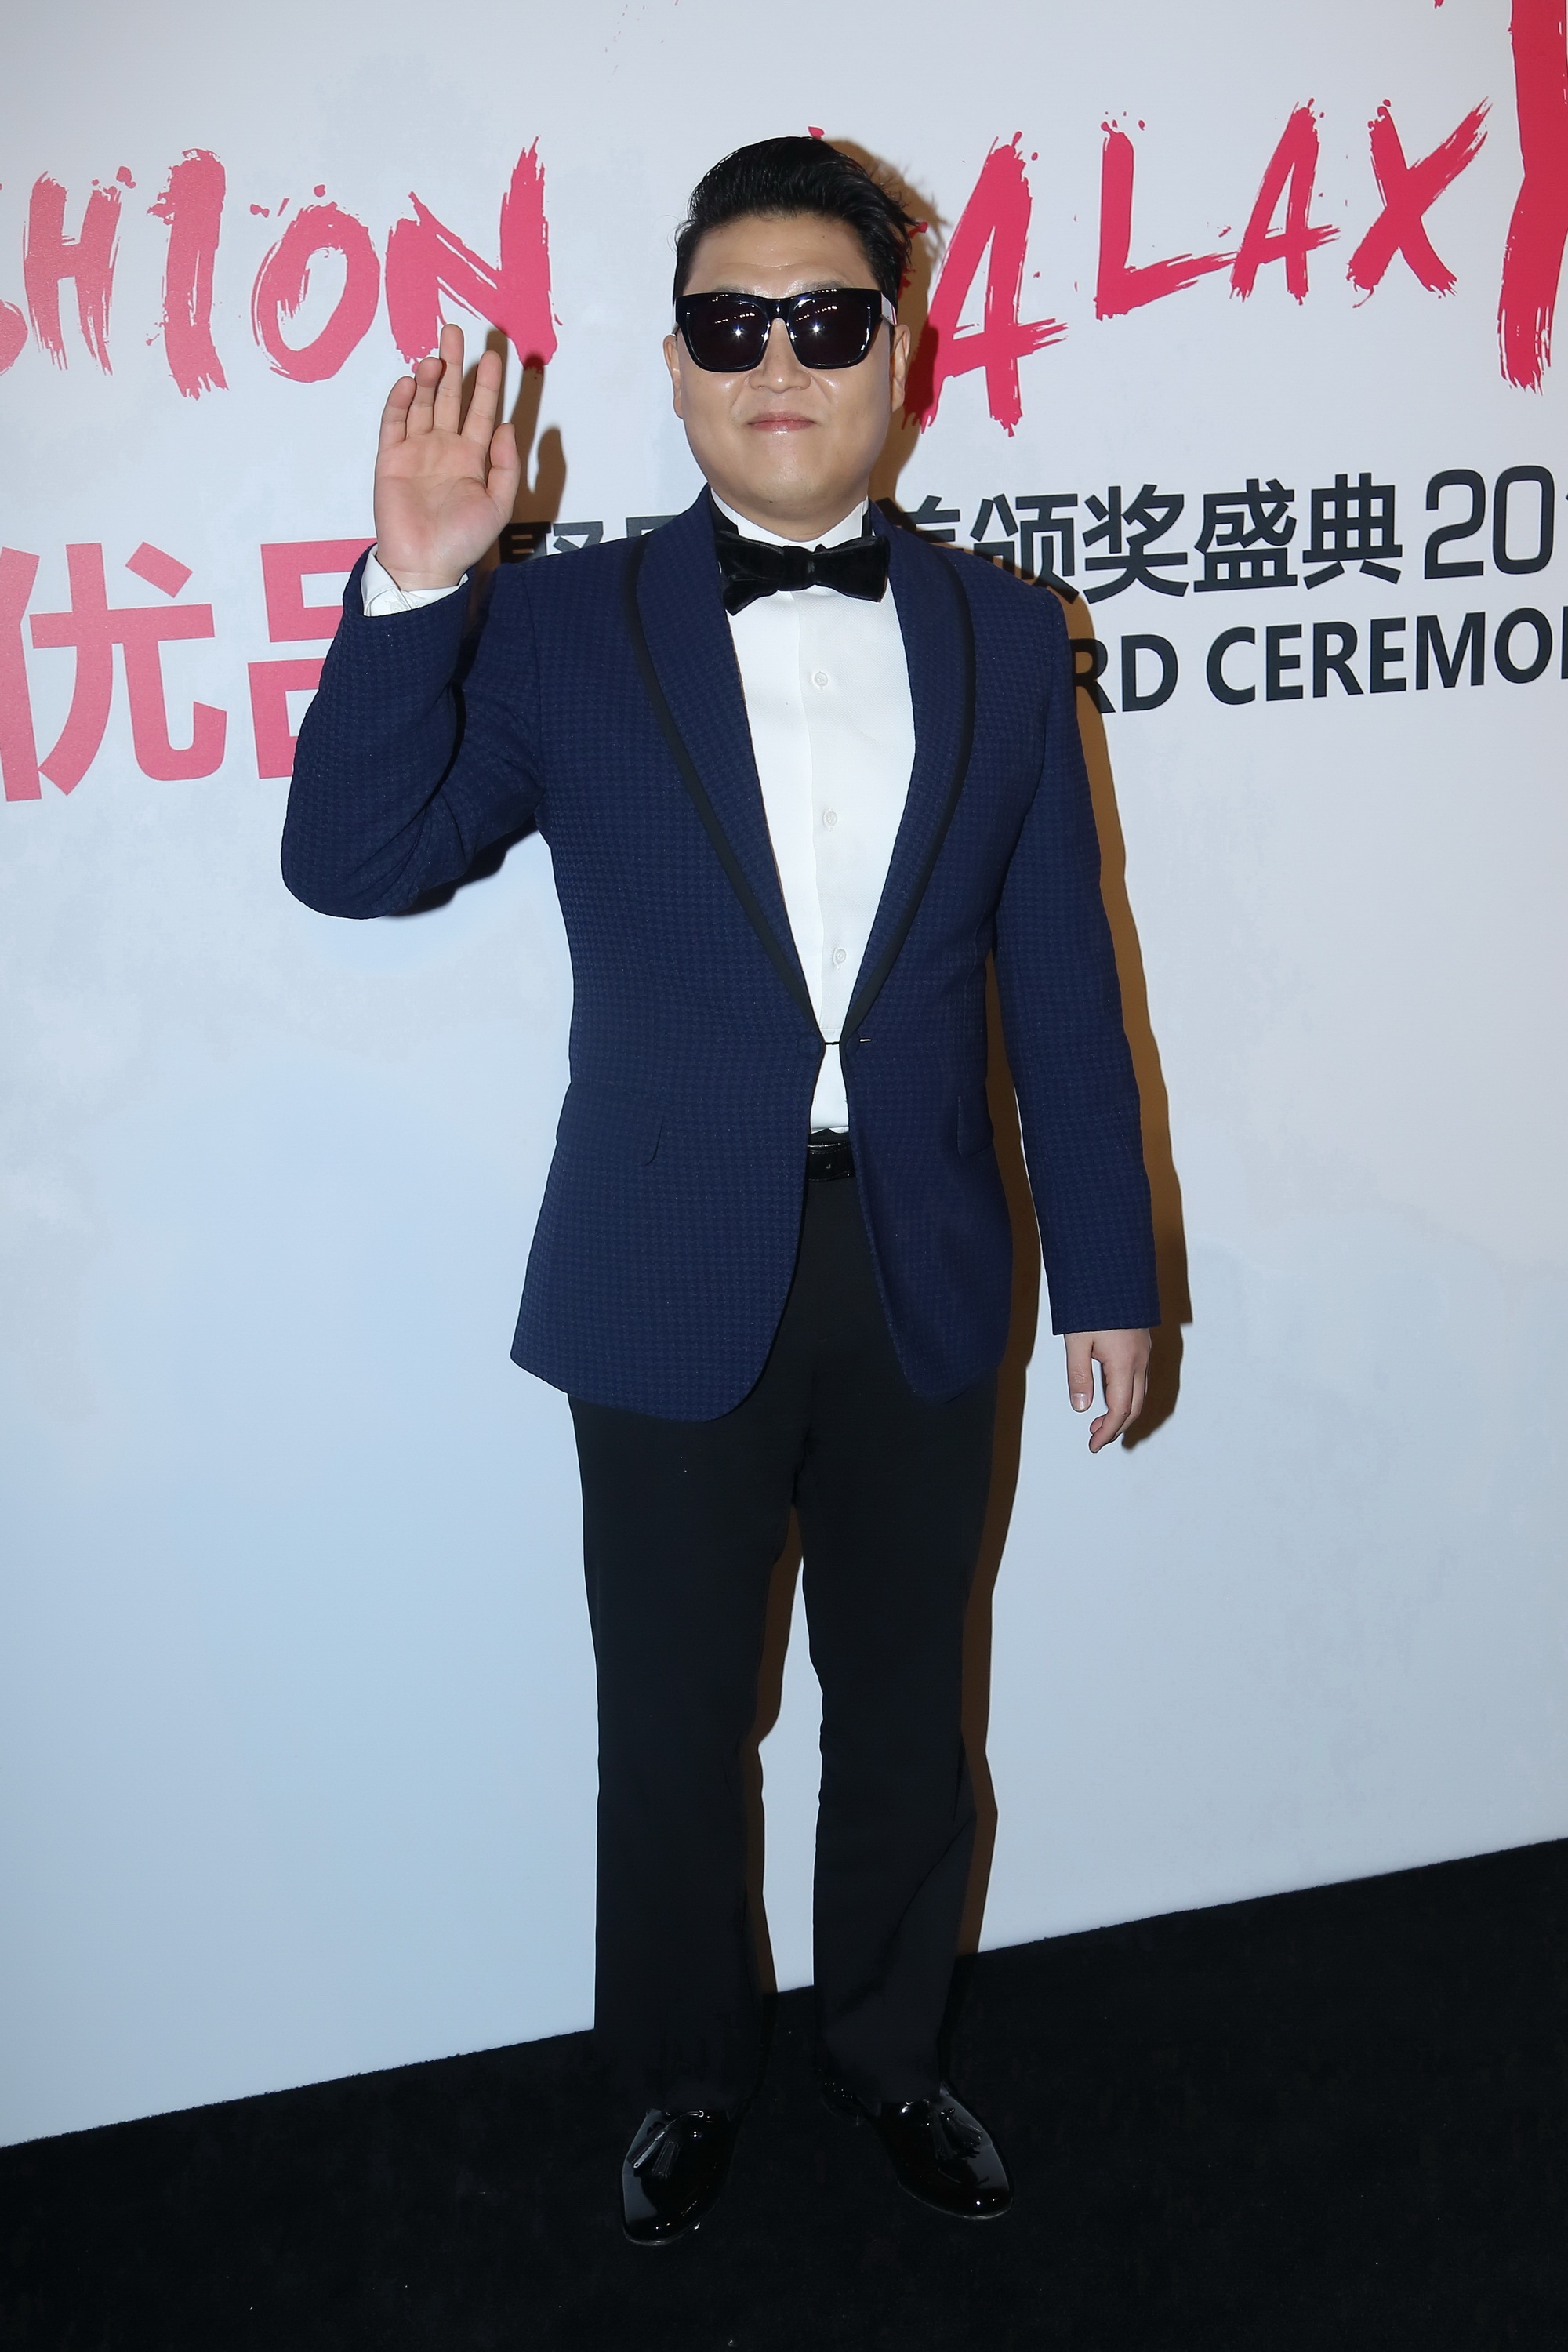 Psy à la cérémonie de remise des prix de Fashion Galaxy le 29 février 2016 à Pékin, Chine. | Source : Getty Images